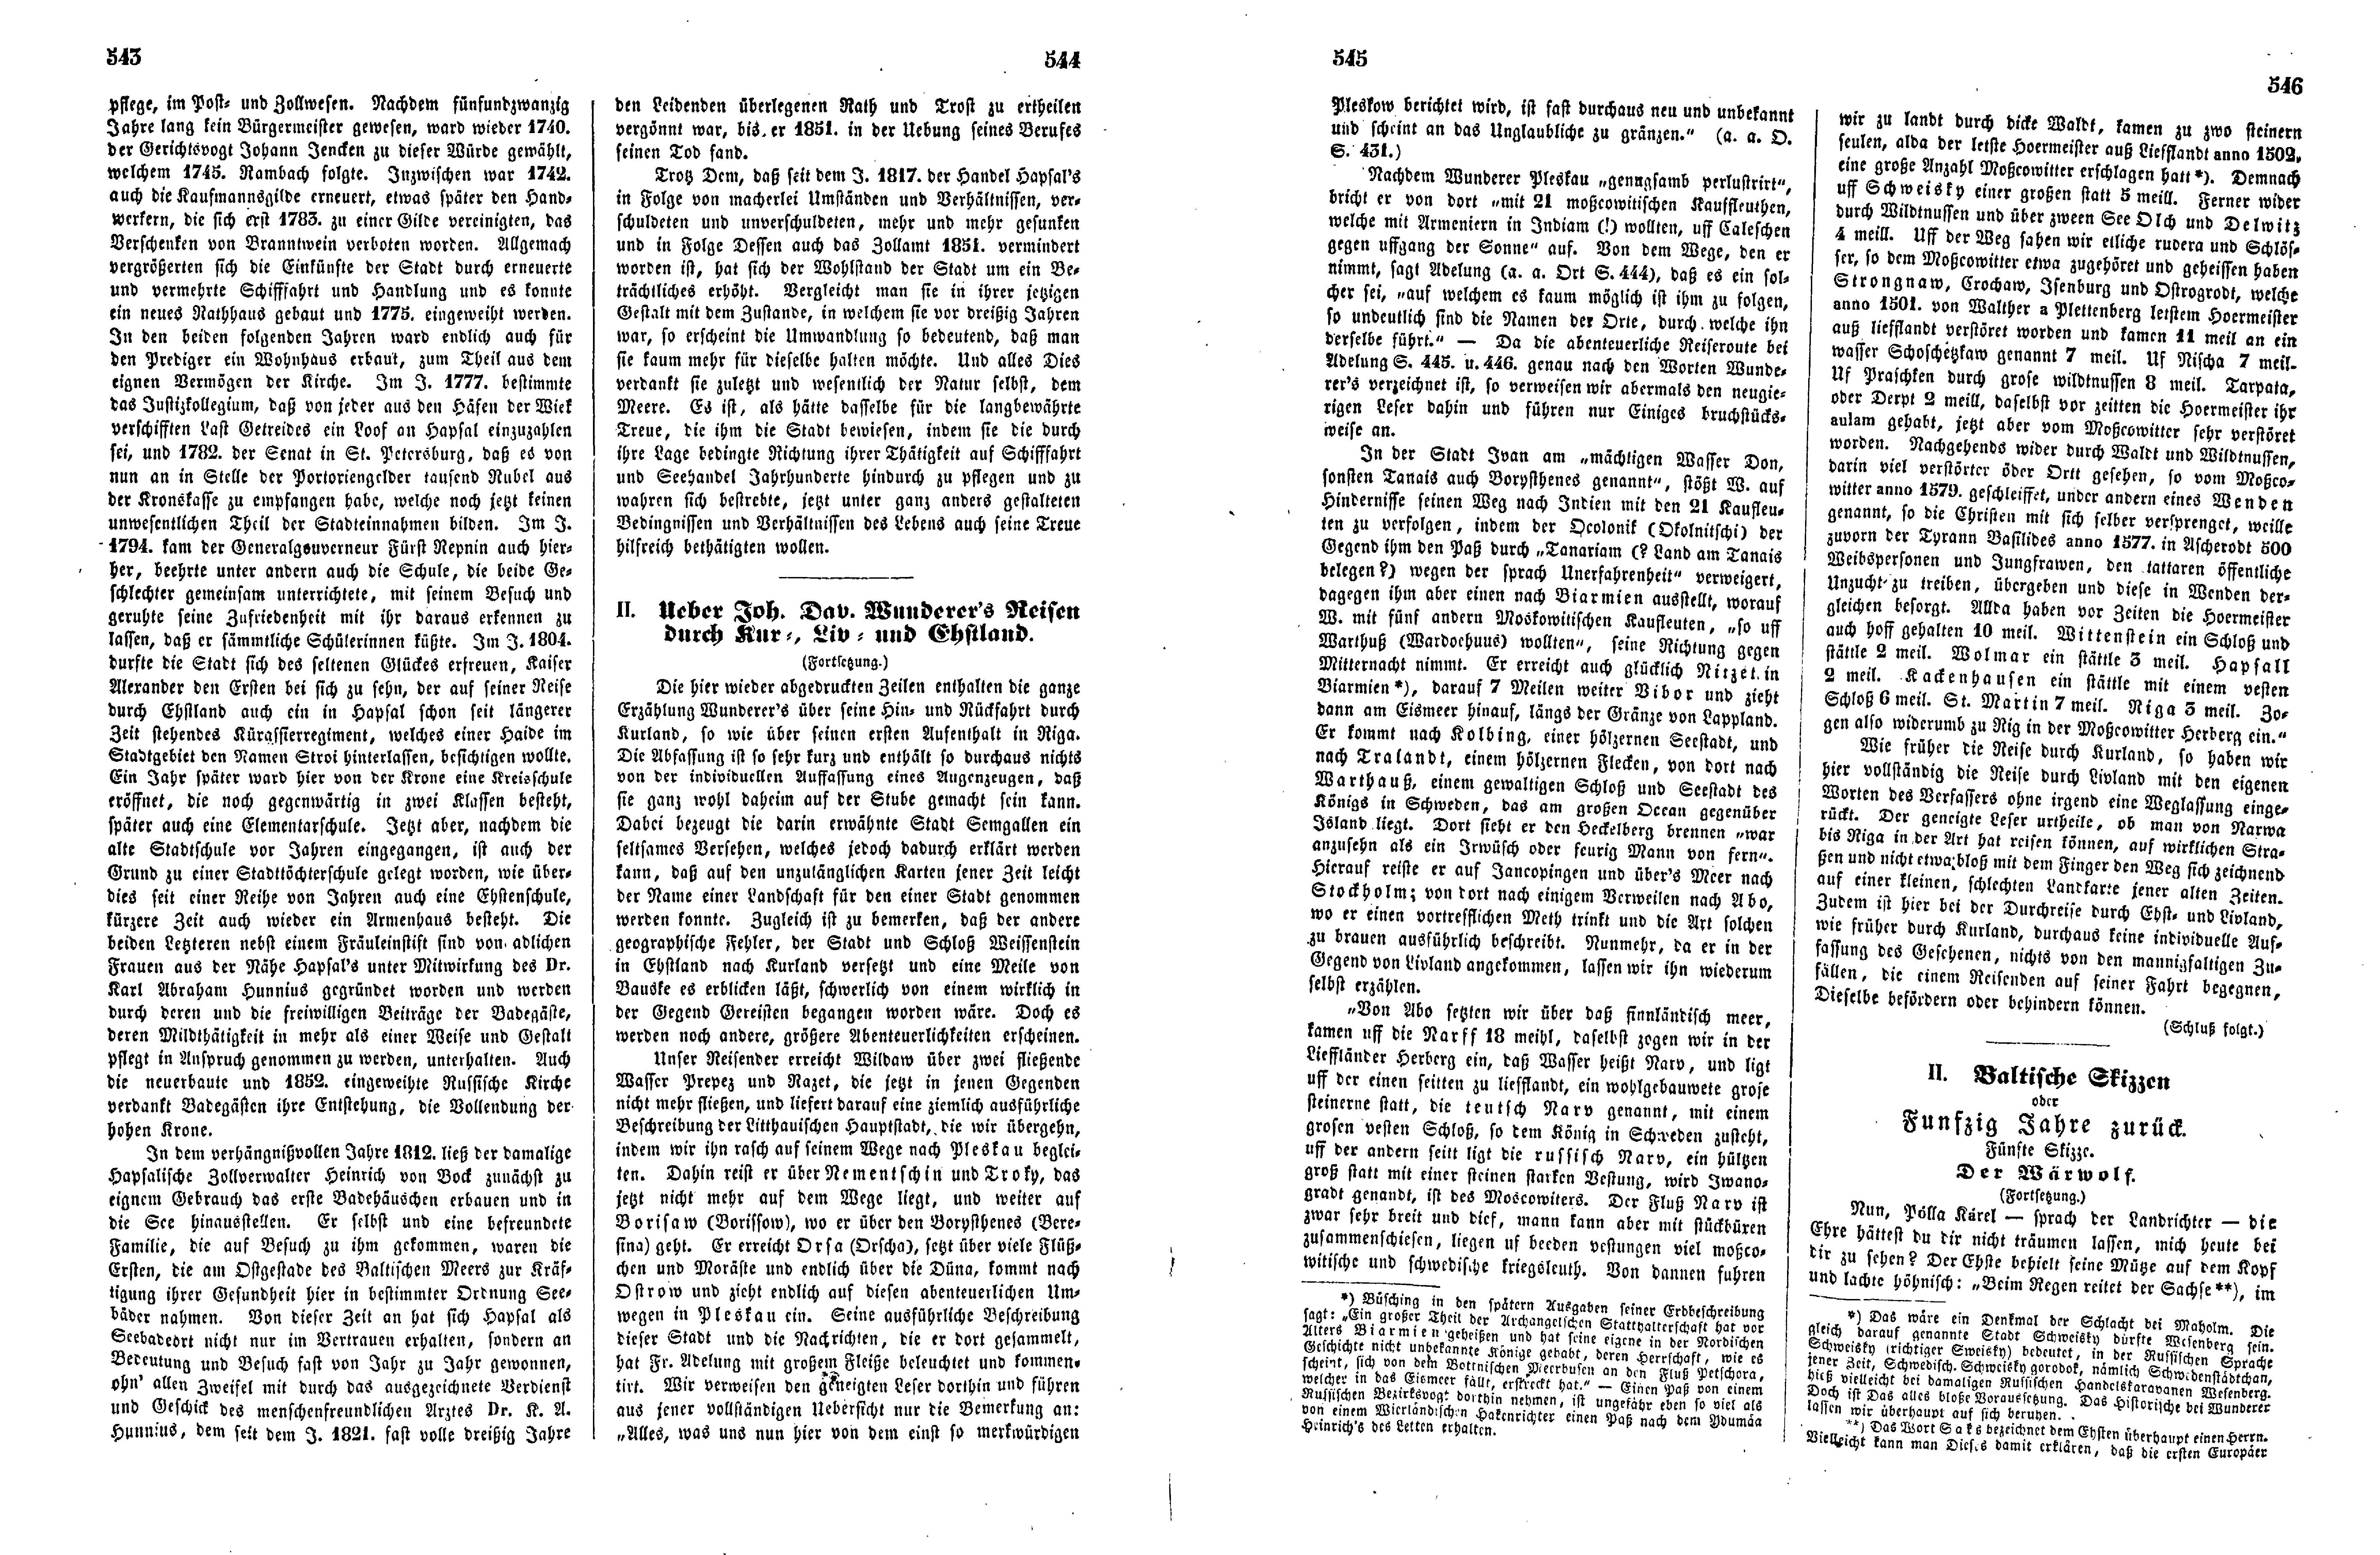 Das Inland [17] (1852) | 141. (543-546) Haupttext